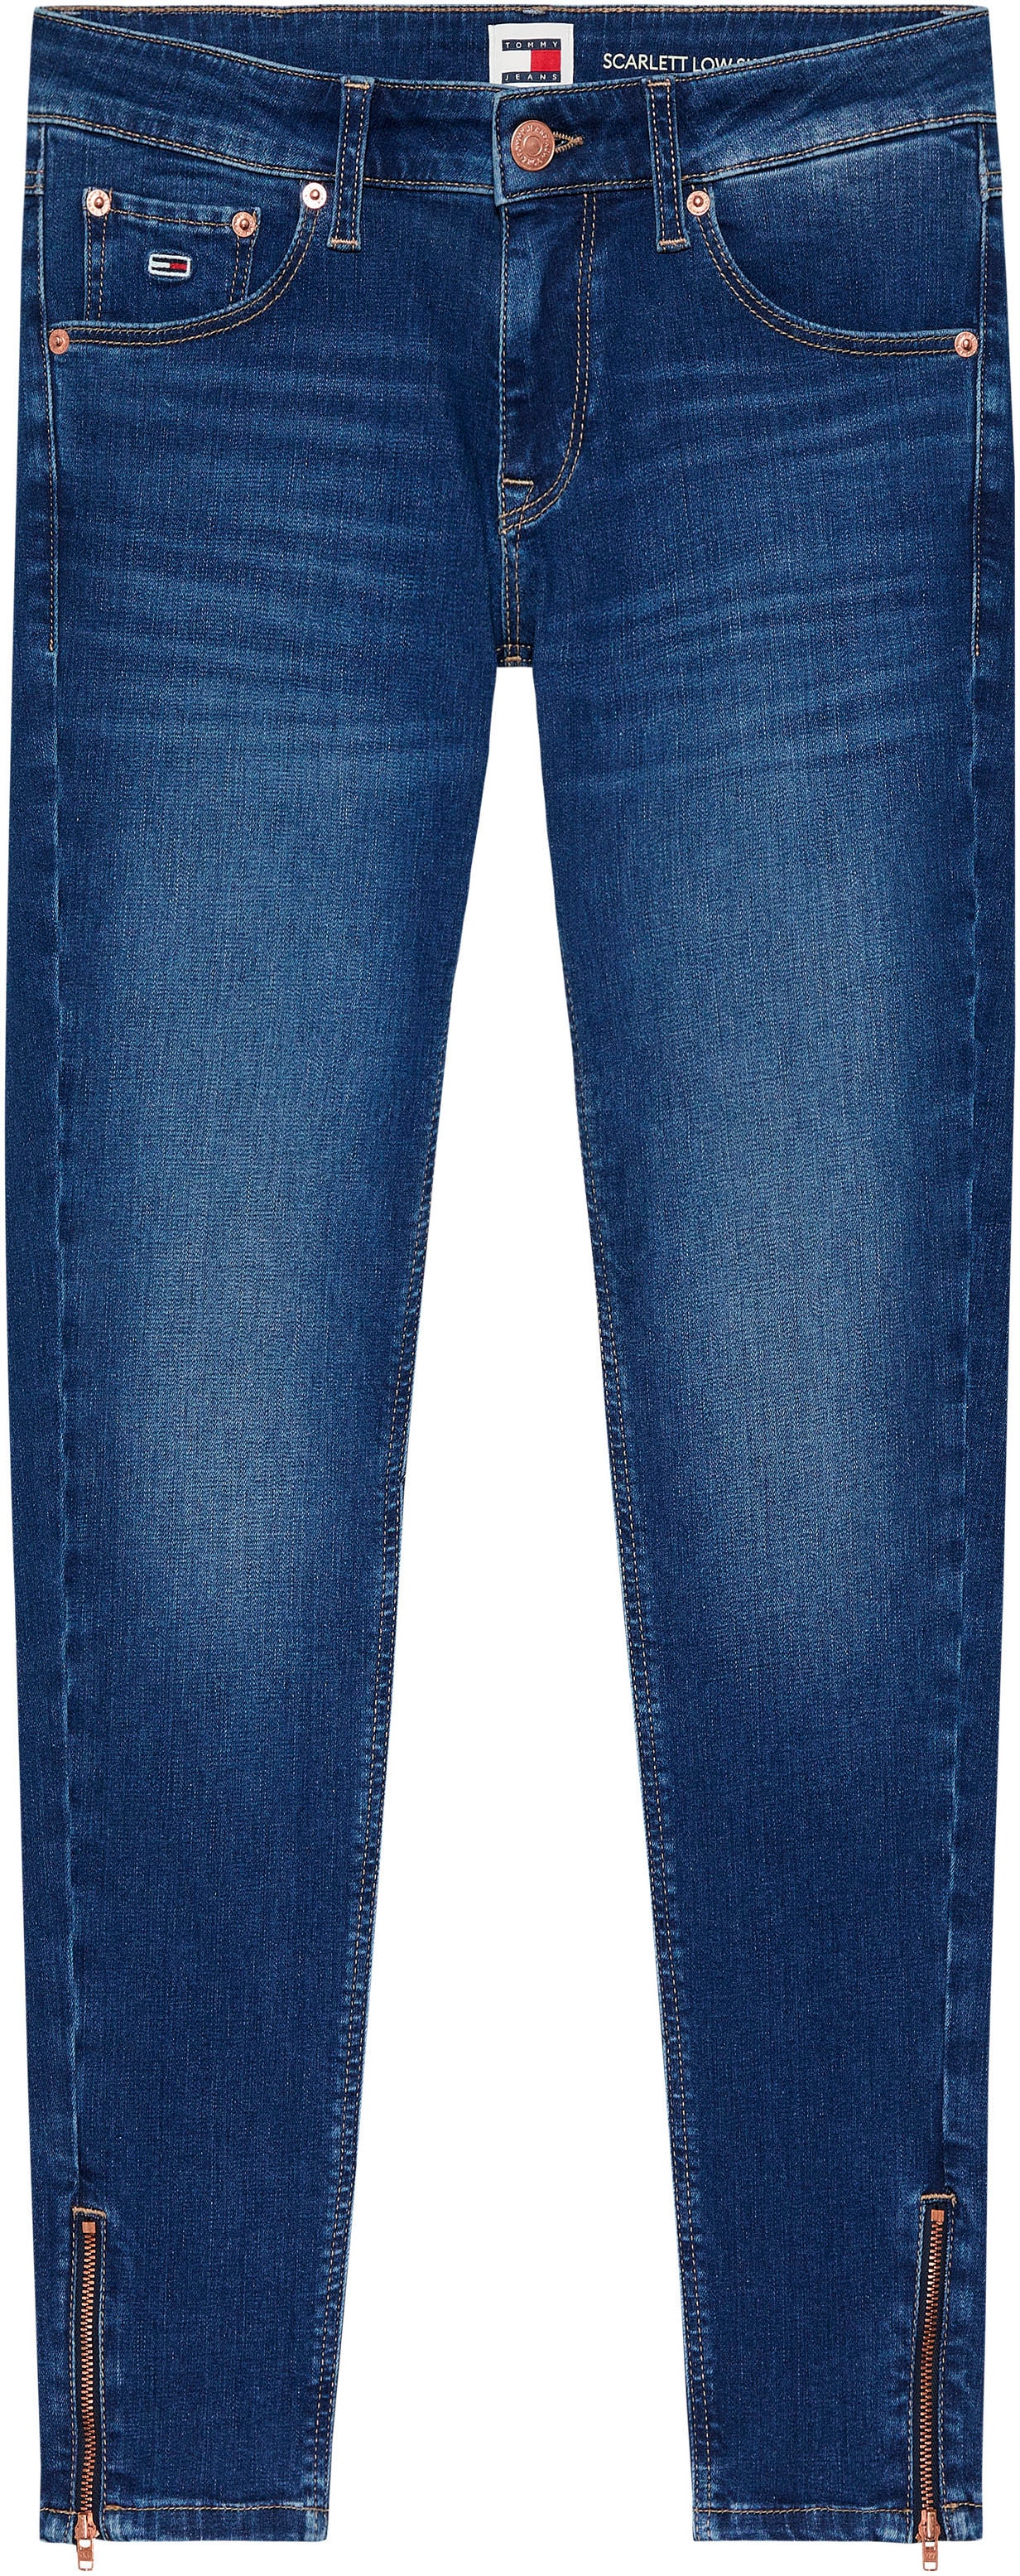 Tommy Jeans Skinny-fit-Jeans »SCARLETT LW SKN ANK ZIP AH1239«, mit Lederlogopatch